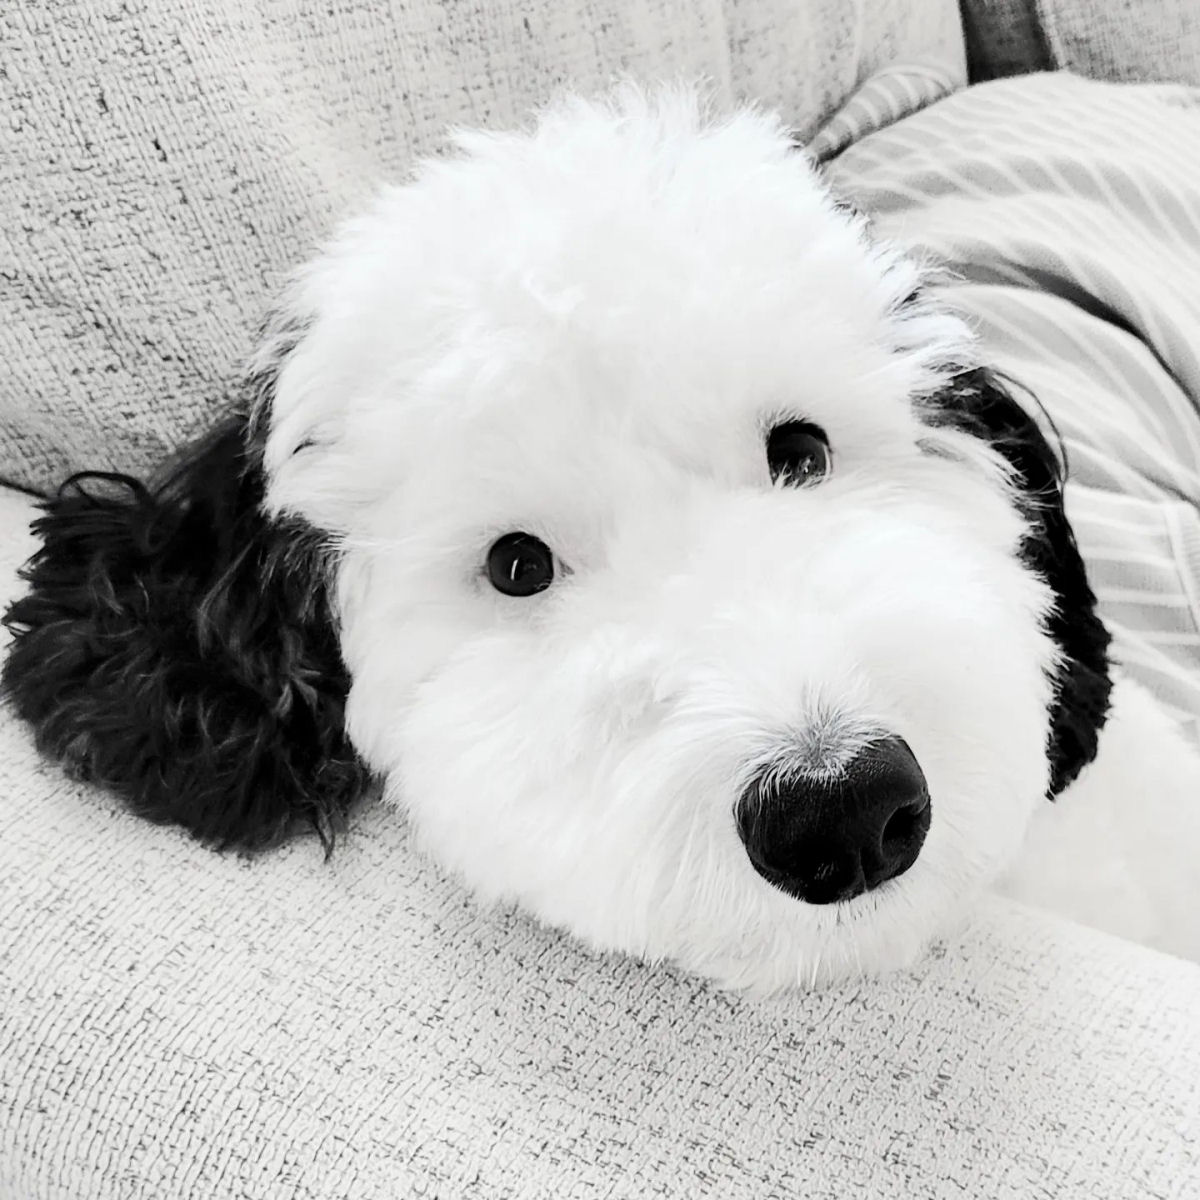 Bayley, a cadelinha adorvel, parece um Snoopy da vida real 05